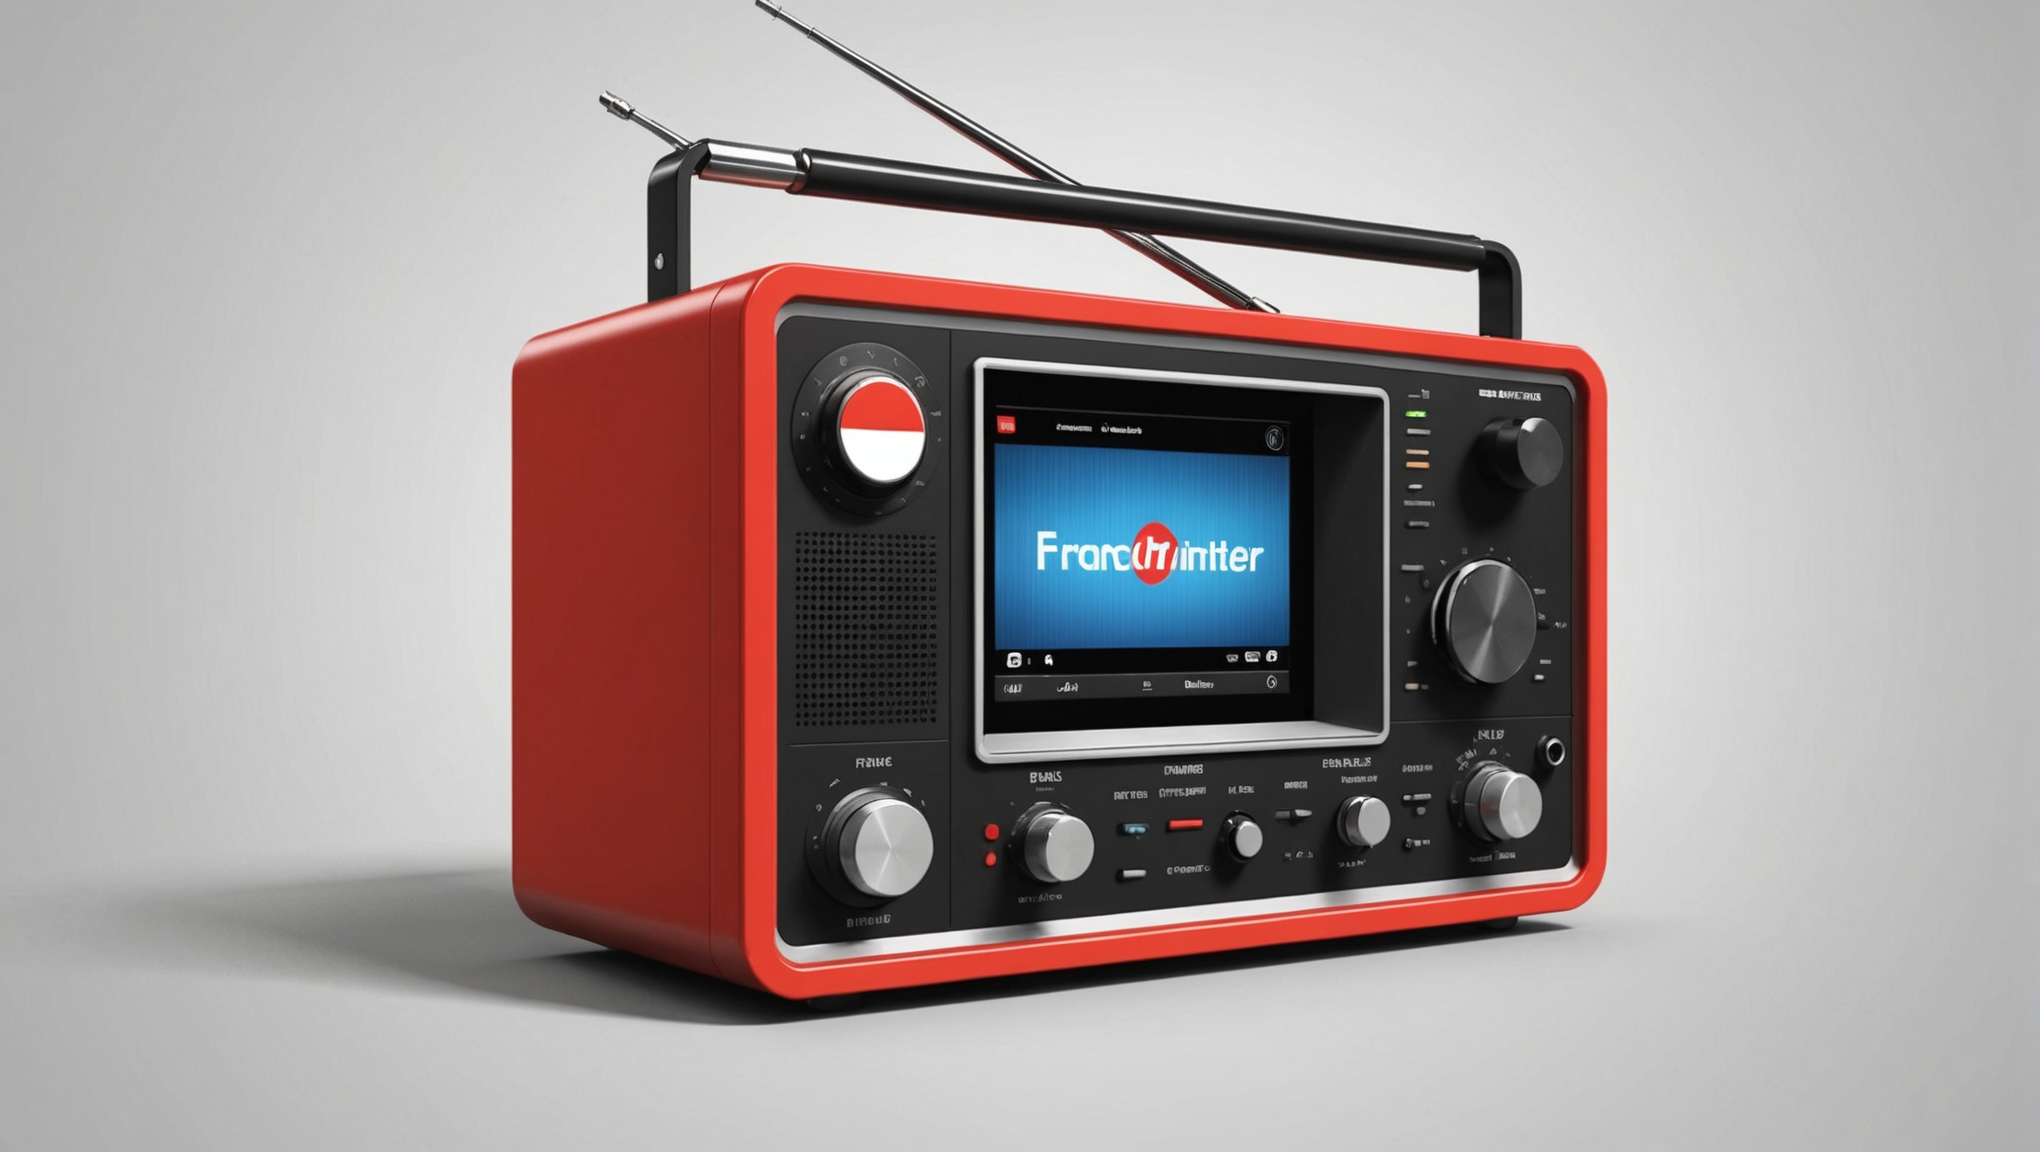 france inter, la radio préférée des français, vous accompagne au quotidien avec une programmation variée et des émissions de qualité. retrouvez toute l'actualité, la culture et des débats enrichissants sur france inter.